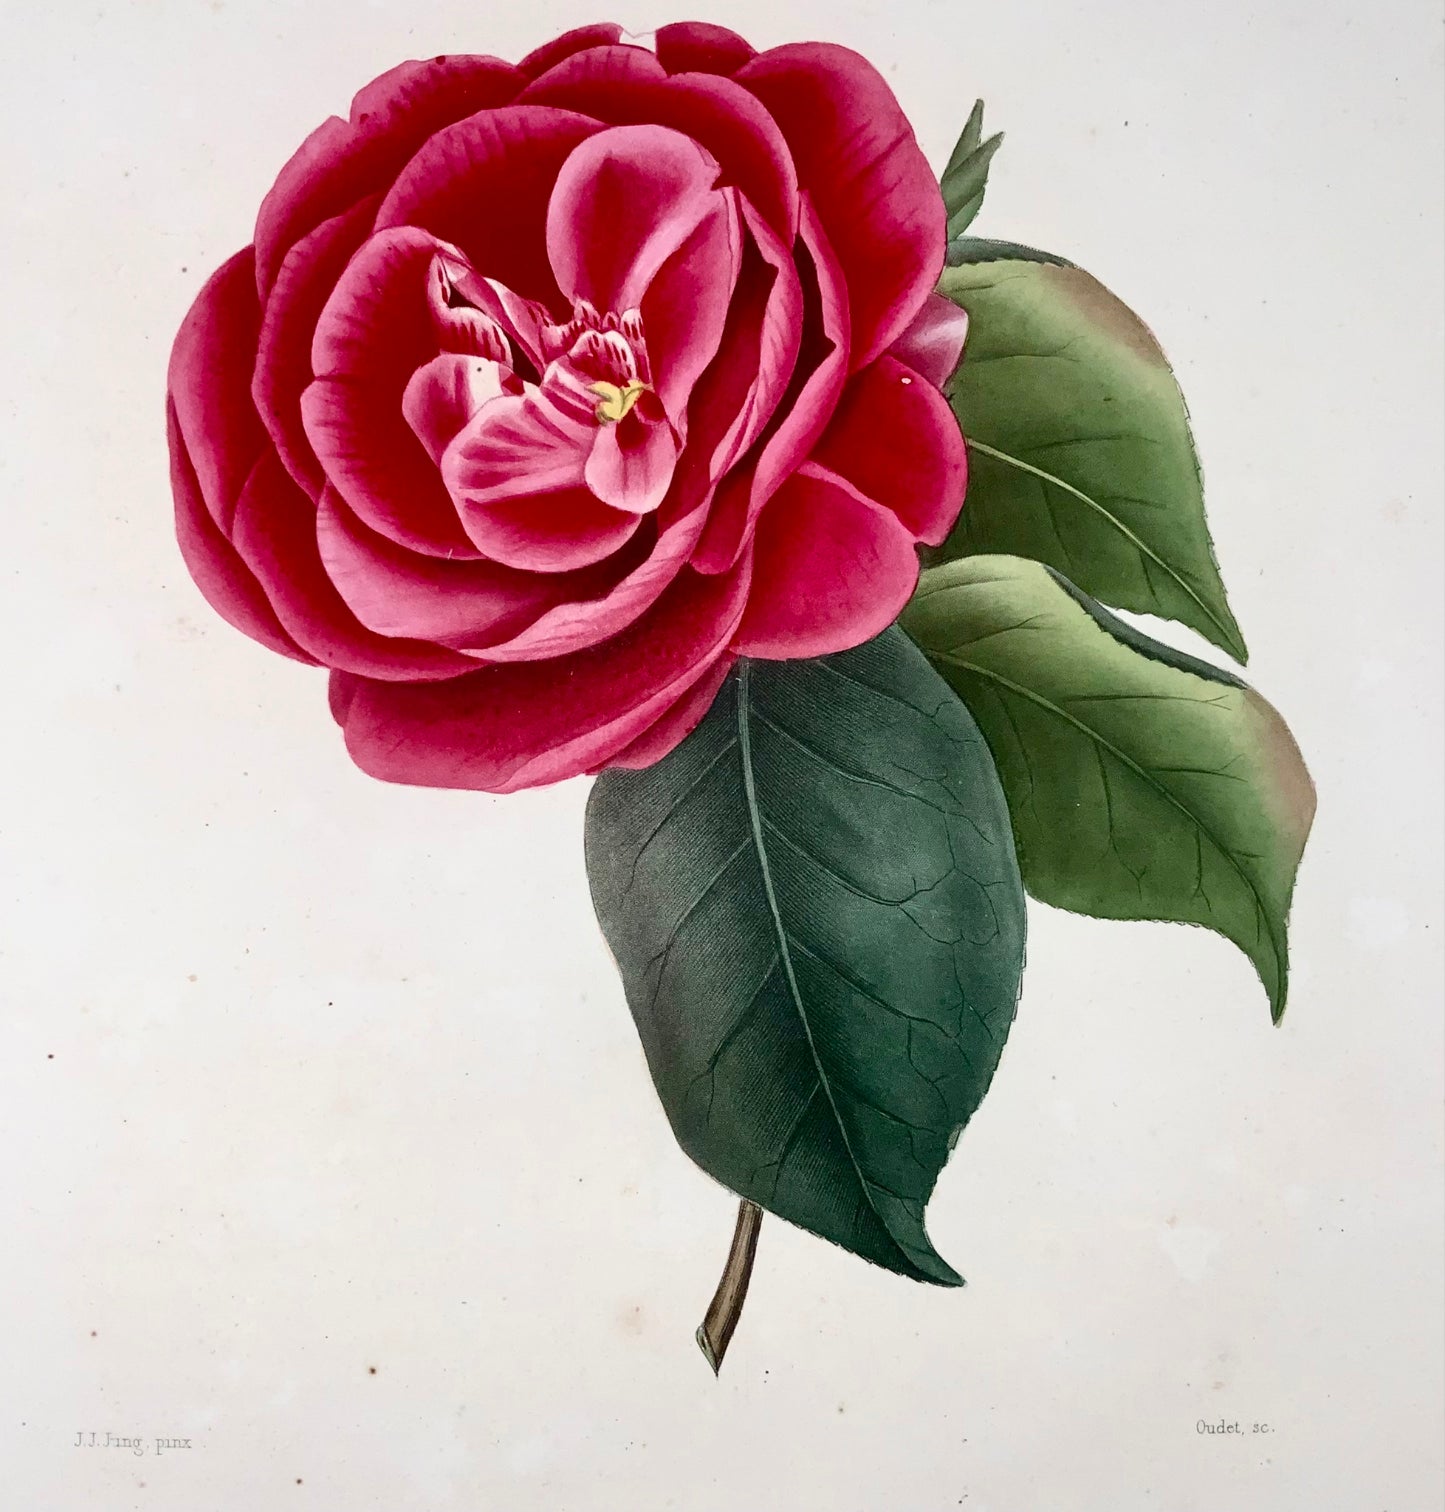 1841 Camellia Cockii, botanique, dessiné par JJ Jung, gravé par Oudet, Berlèse